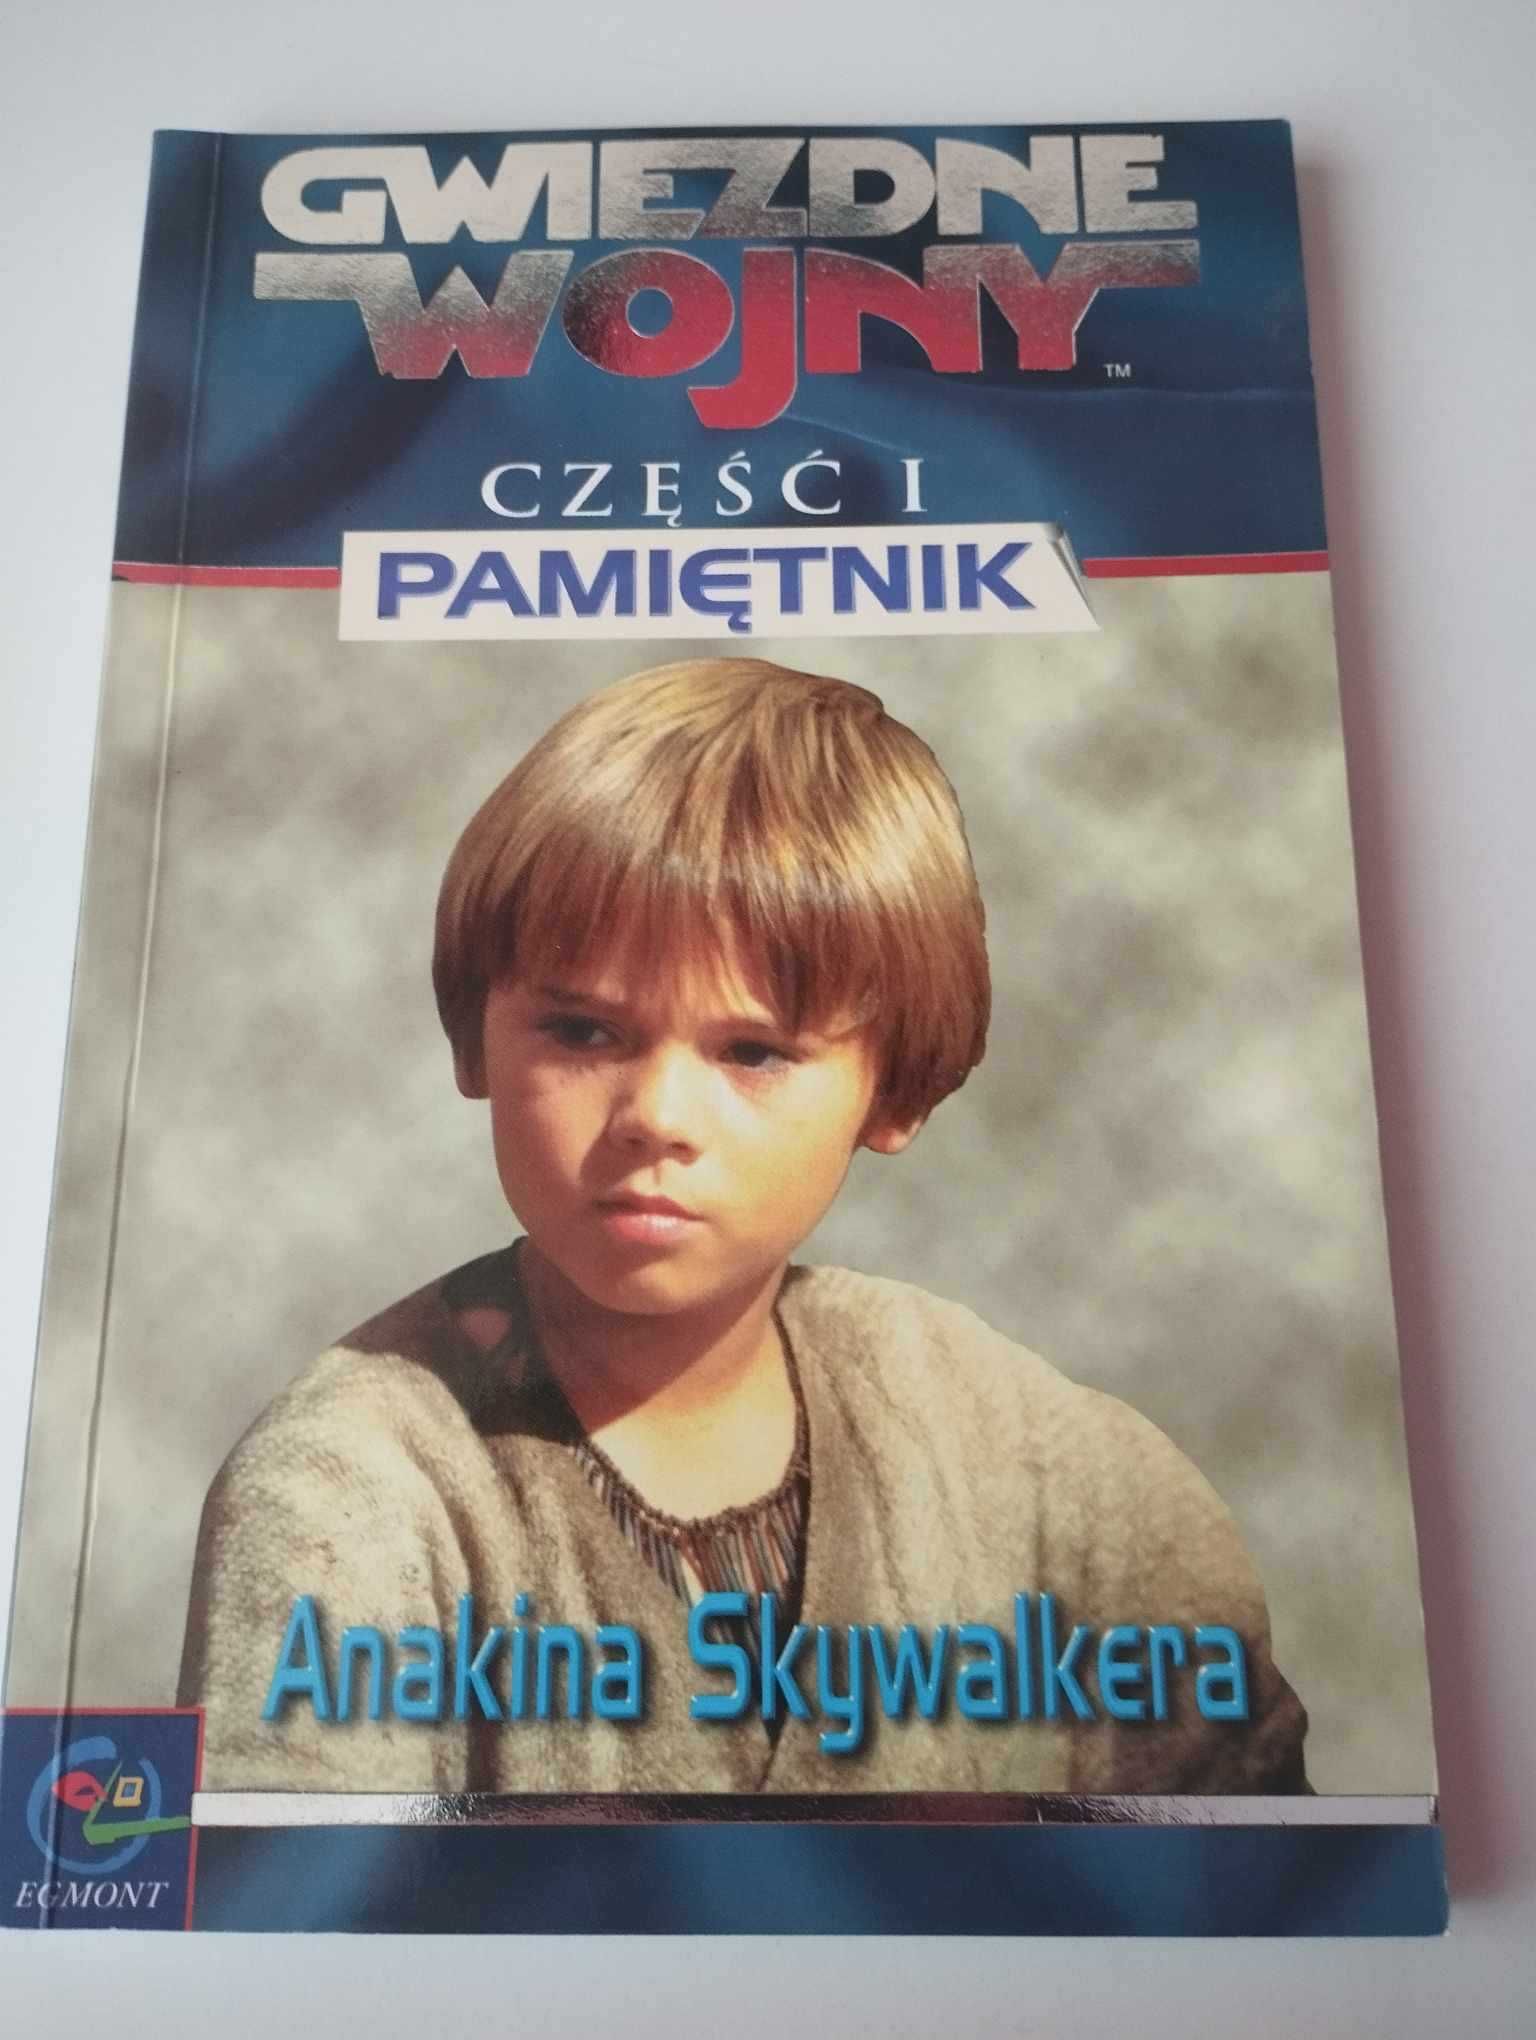 Pamiętnik Anakina Skywalkera Cz. 1 Gwiezdne Wojny